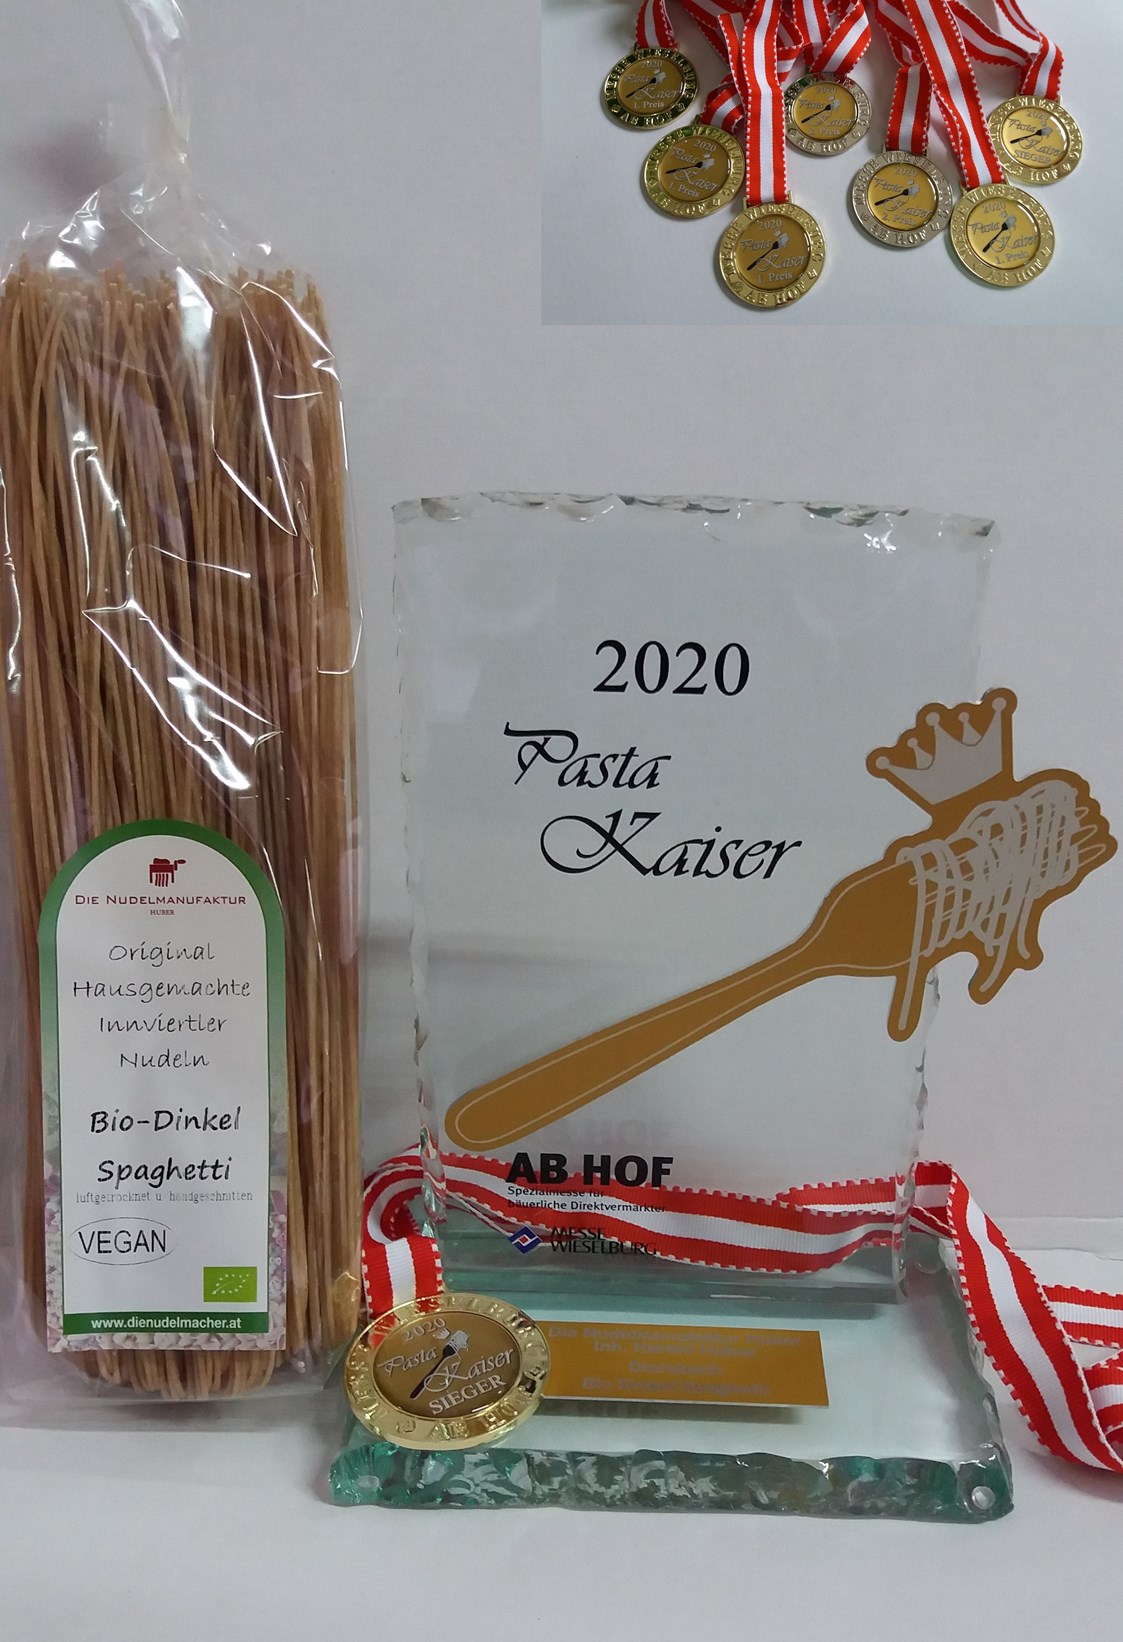 Direktvermarkter: Pasta Kaiser 2020 bei der Messe Wieselburg (Bio Dinkel Spaghetti)
Nudelmanfaktur Huber - Nudelmanufaktur Huber